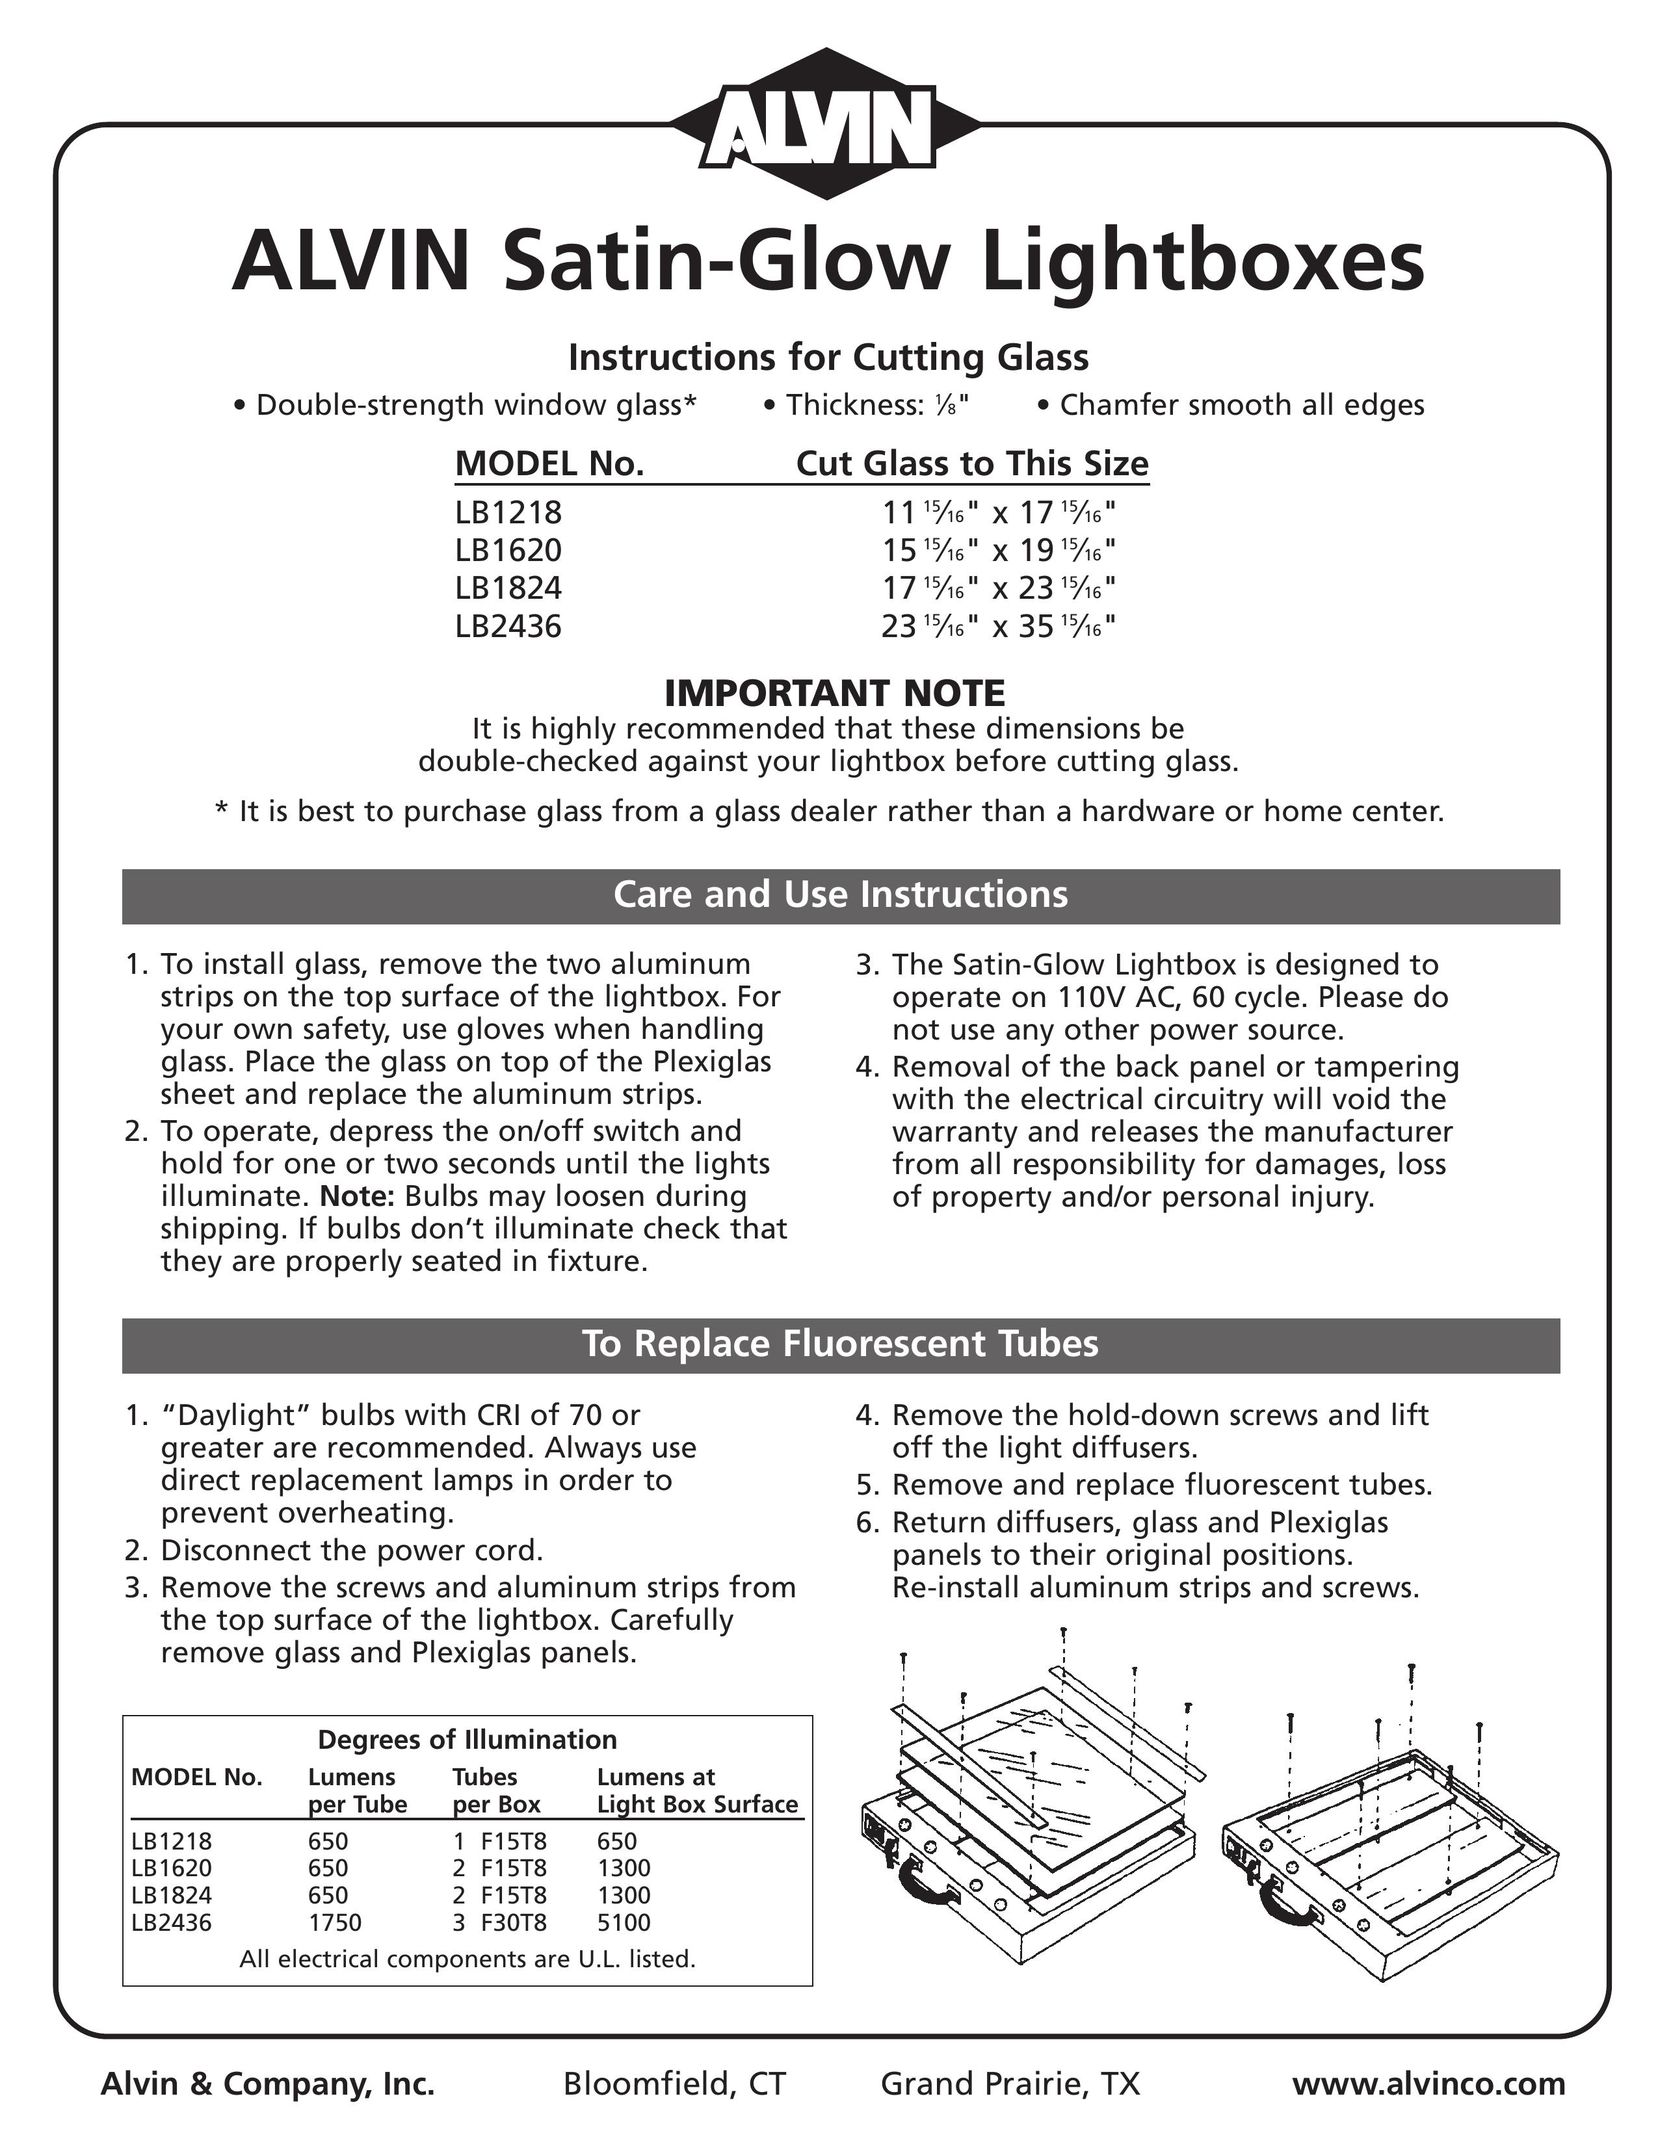 Alvin LB1218 Indoor Furnishings User Manual